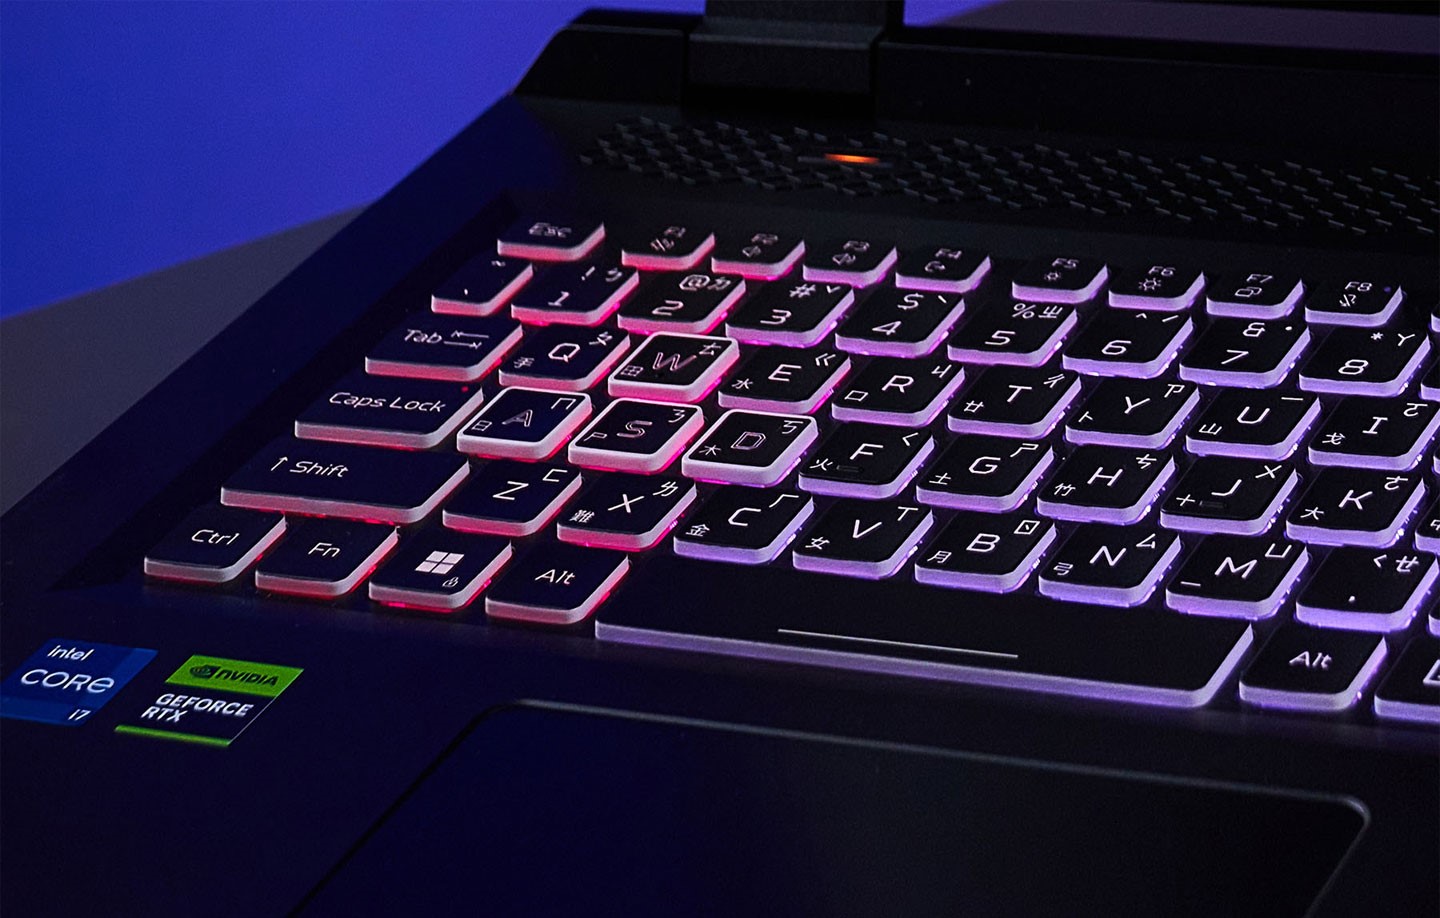 Nitro 17 配備全尺寸孤島式鍵盤，並具備四區 RGB 背光，鍵帽邊緣的半透明設計能進一步提升燈光呈現的效果。